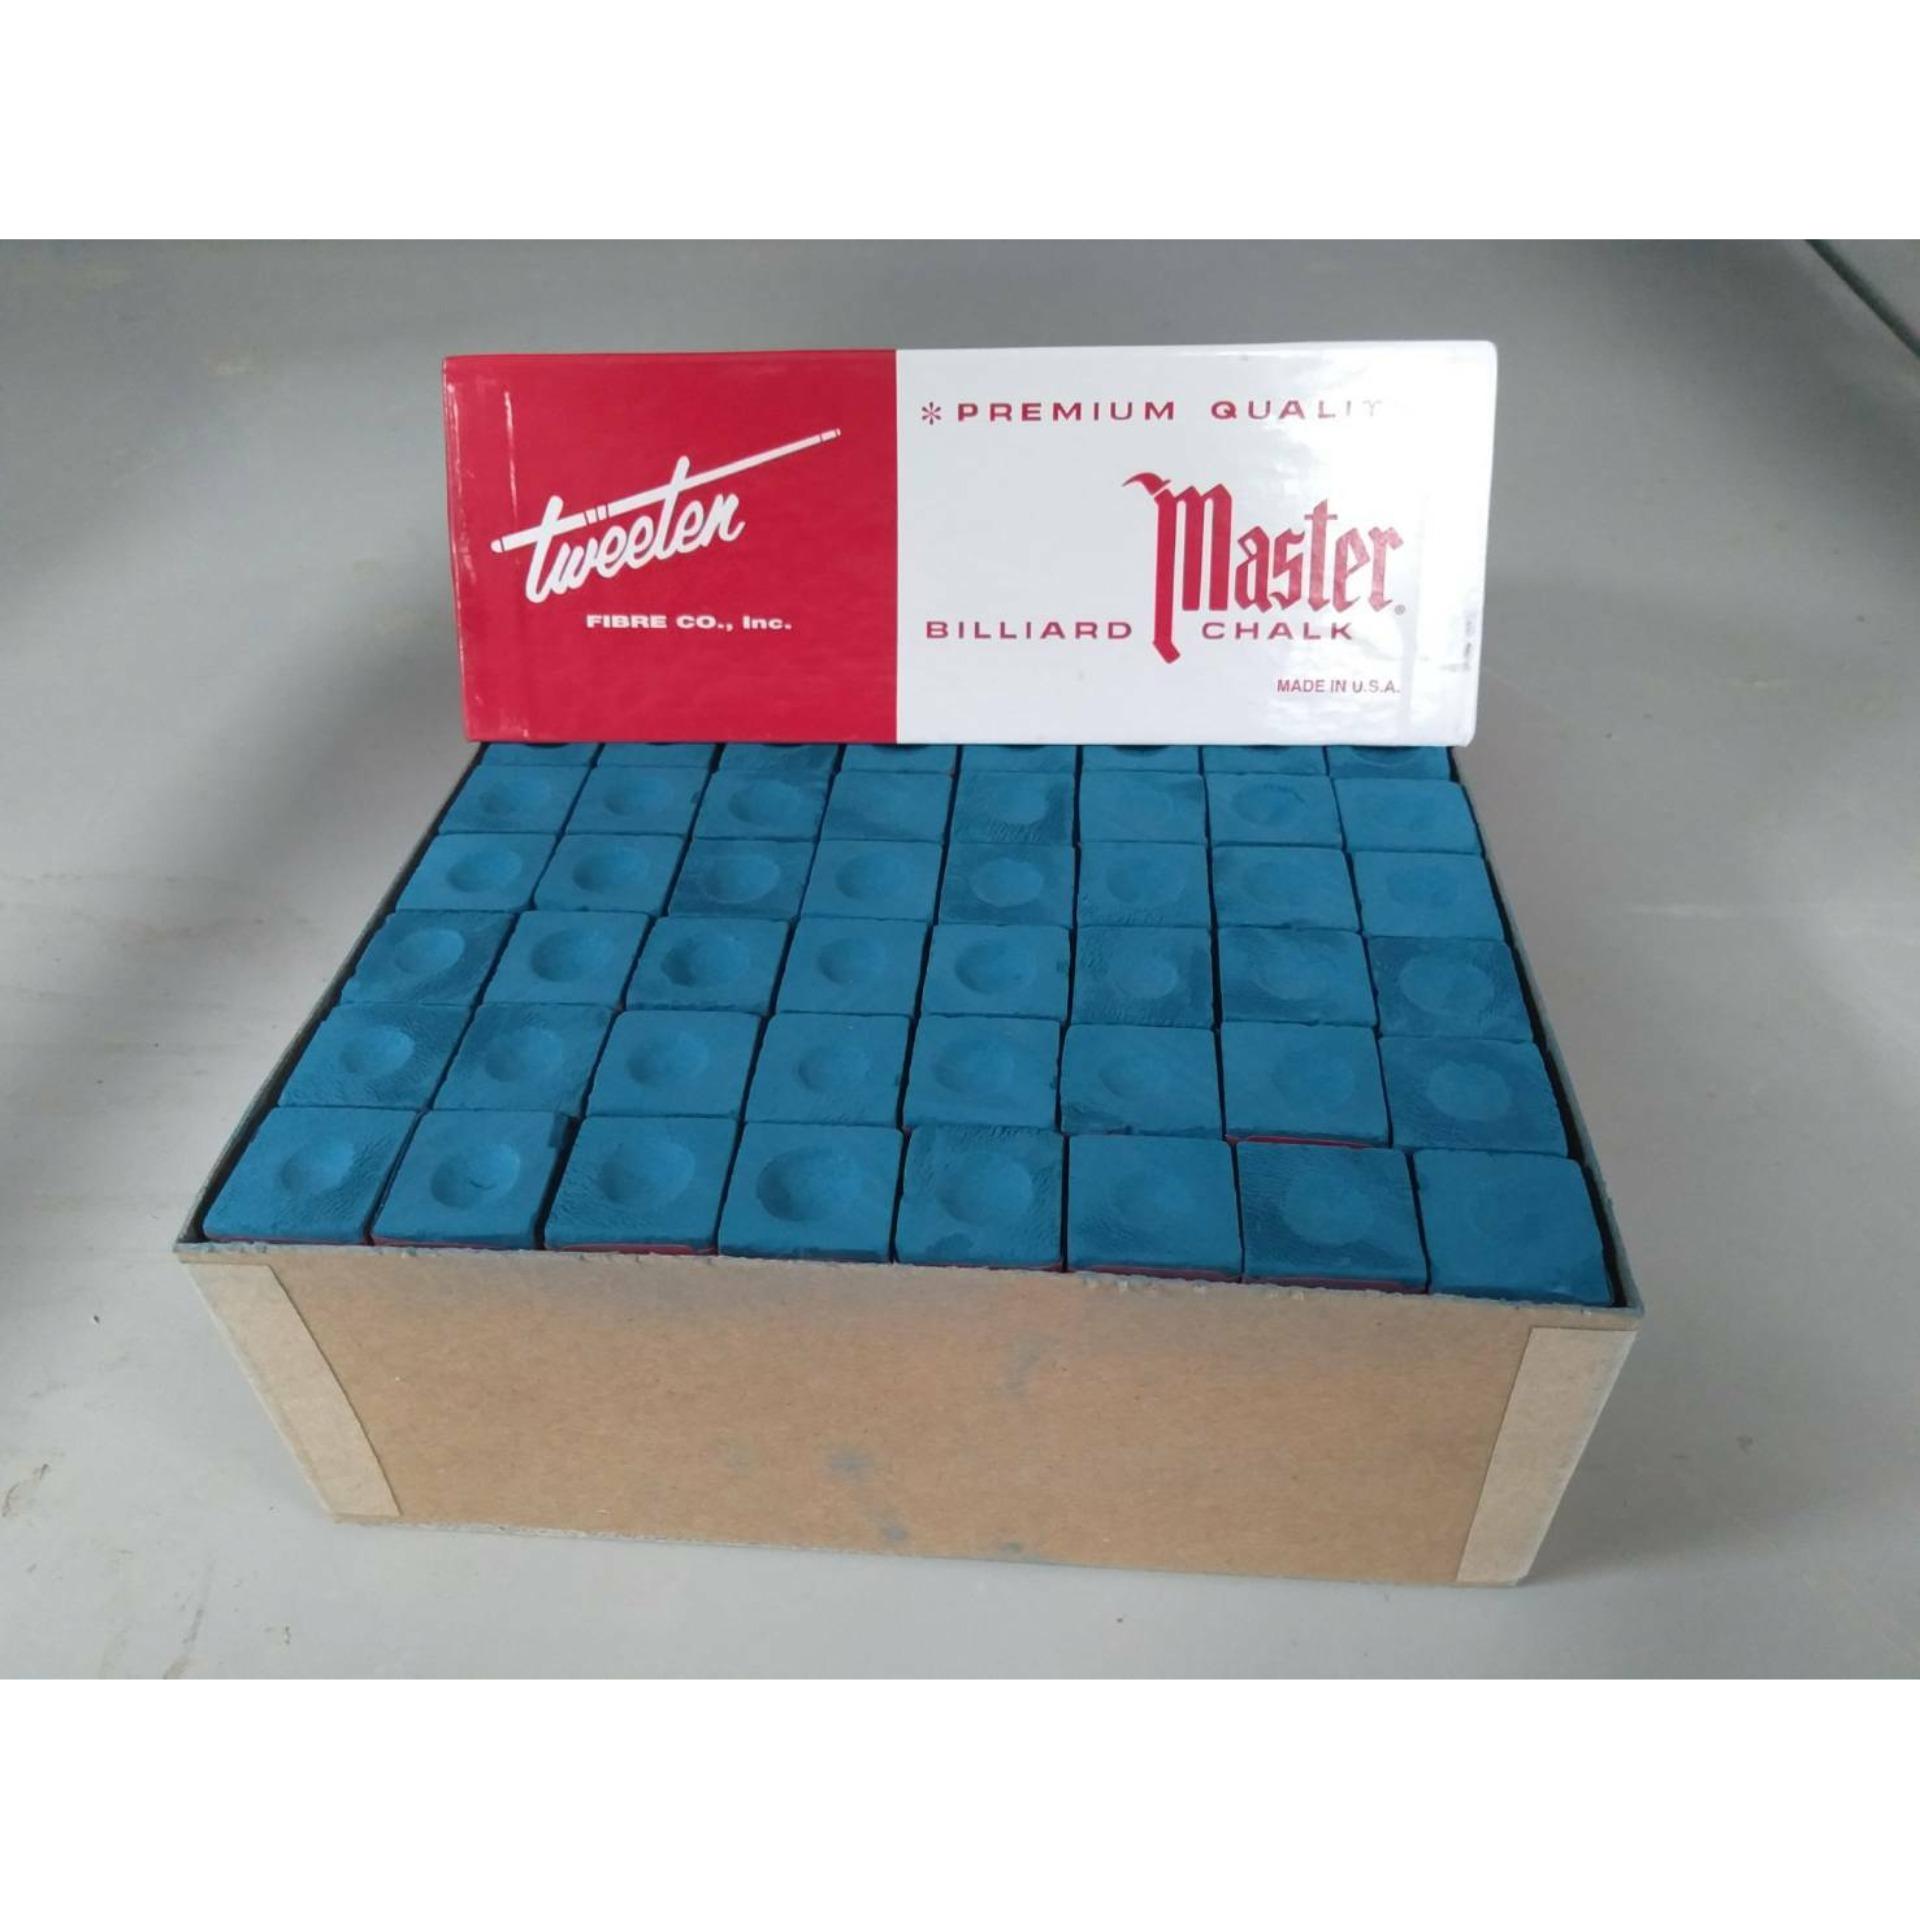 ชอล์กฝนหัวคิว ตรากวางมาสเตอร์ made in USA สีน้ำเงิน 1กล่อง ( 144 ก้อน ) ชอล์คฝนหัวคิว บิลเลียด สนุ๊กเกอร์ พูล โต๊ะบิลเลียด โต๊ะสนุ๊กเกอร์ โต๊ะพูล BILLIARD CHALK ที่ฝนหัวคิว ชอร์กฝนปลายไม้สนุ็ก ที่ฝนปลายไม้สนุ๊กเกอร์ ชอร์คฝนปลายไม้สนุ๊กเกอร์